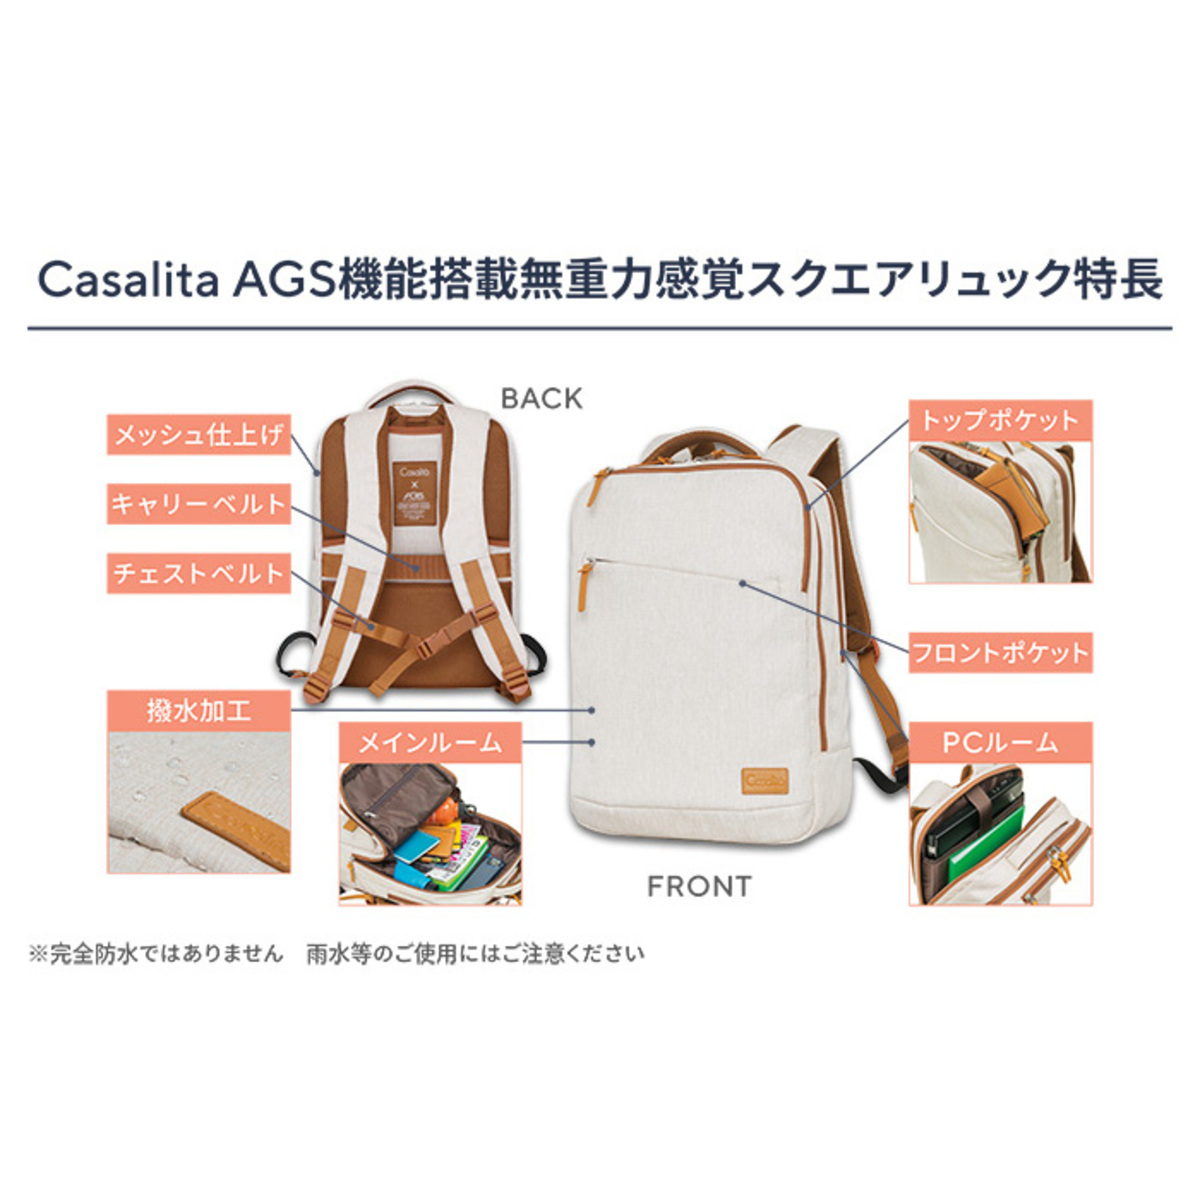 Casalita AGS機能搭載無重力感覚スクエアリュック キャサリータ